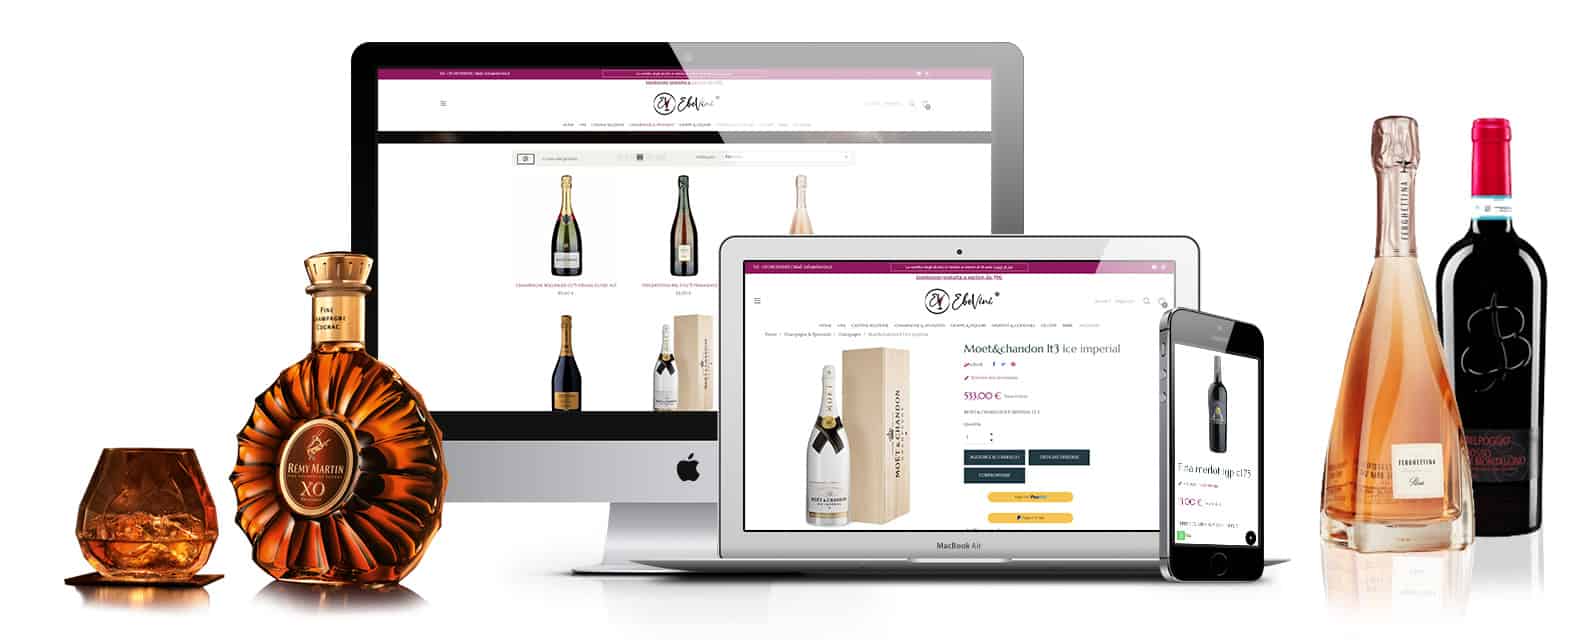 ebevini sito ecommerce napoli vini liquori spumanti - Creazione sito Ecommerce Enoteca online vini - Ebevini - Web Agency Napoli Flashex